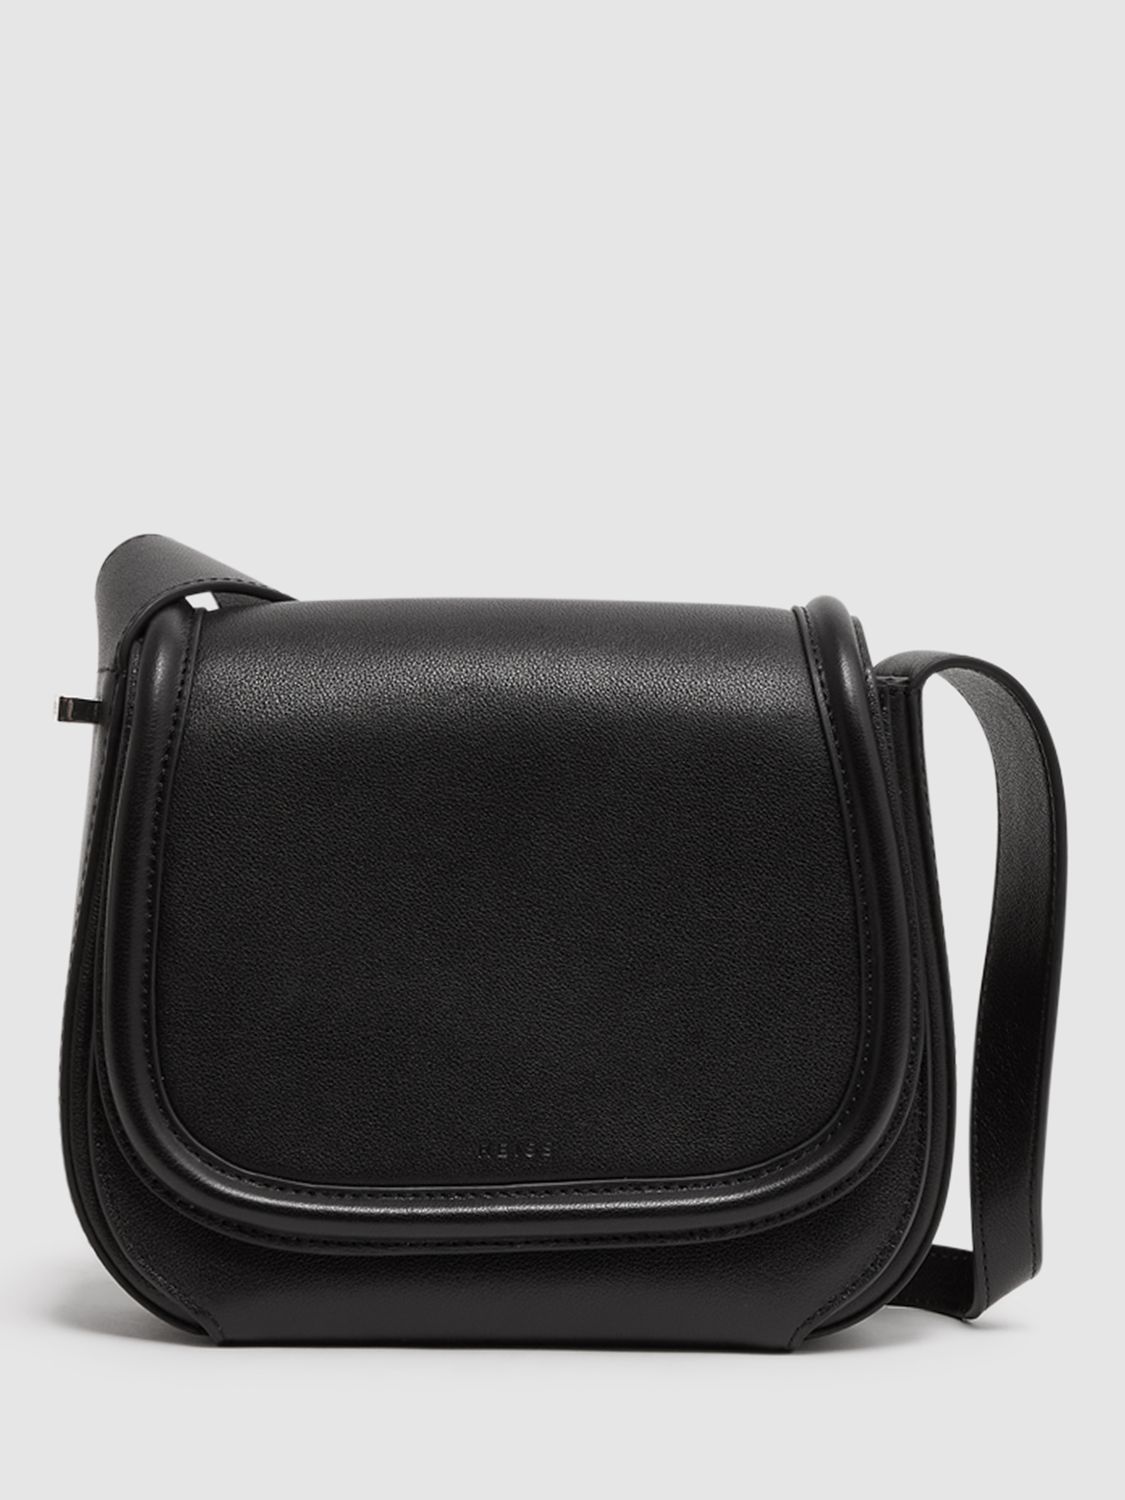 Reiss Cleo Leather Shoulder Bag, Black